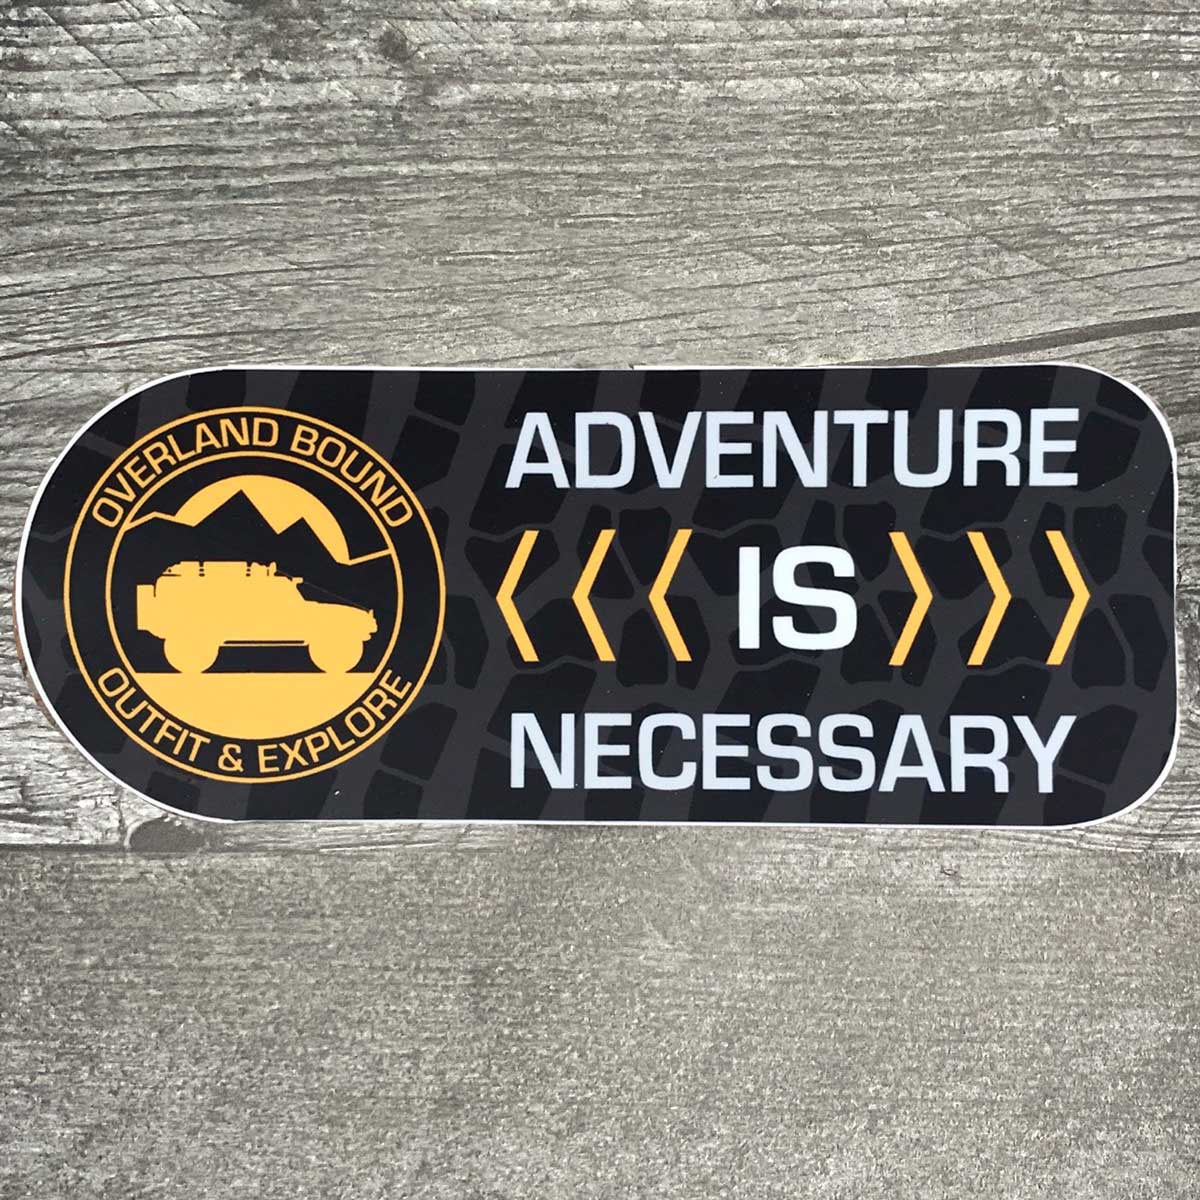 Adventure is Necessary Sticker - Overland Bound